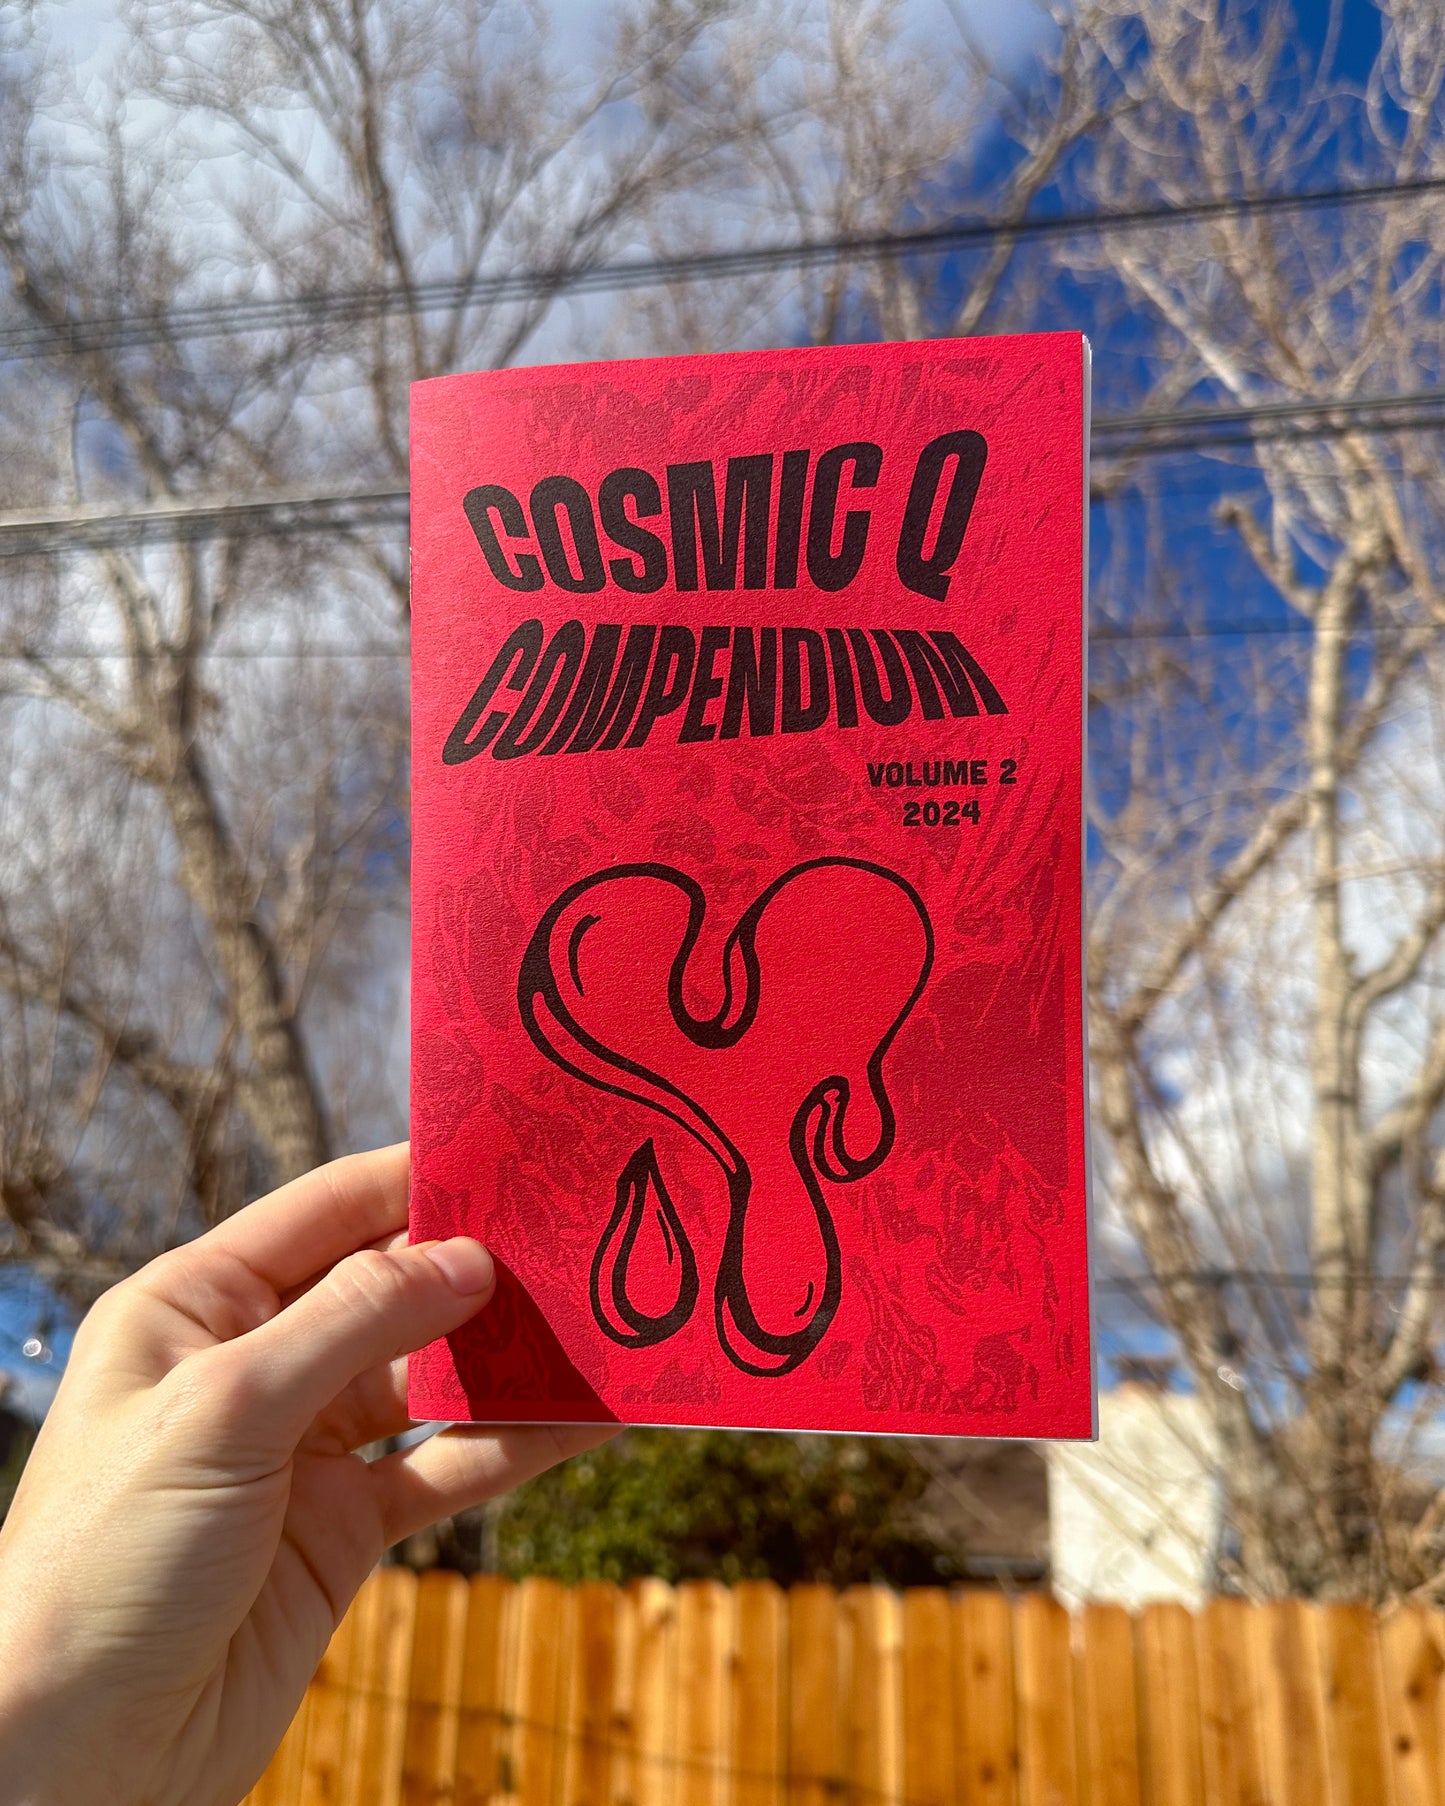 "COSMIC Q COMPENDIUM" Volume 2 "Queer Love" Zine